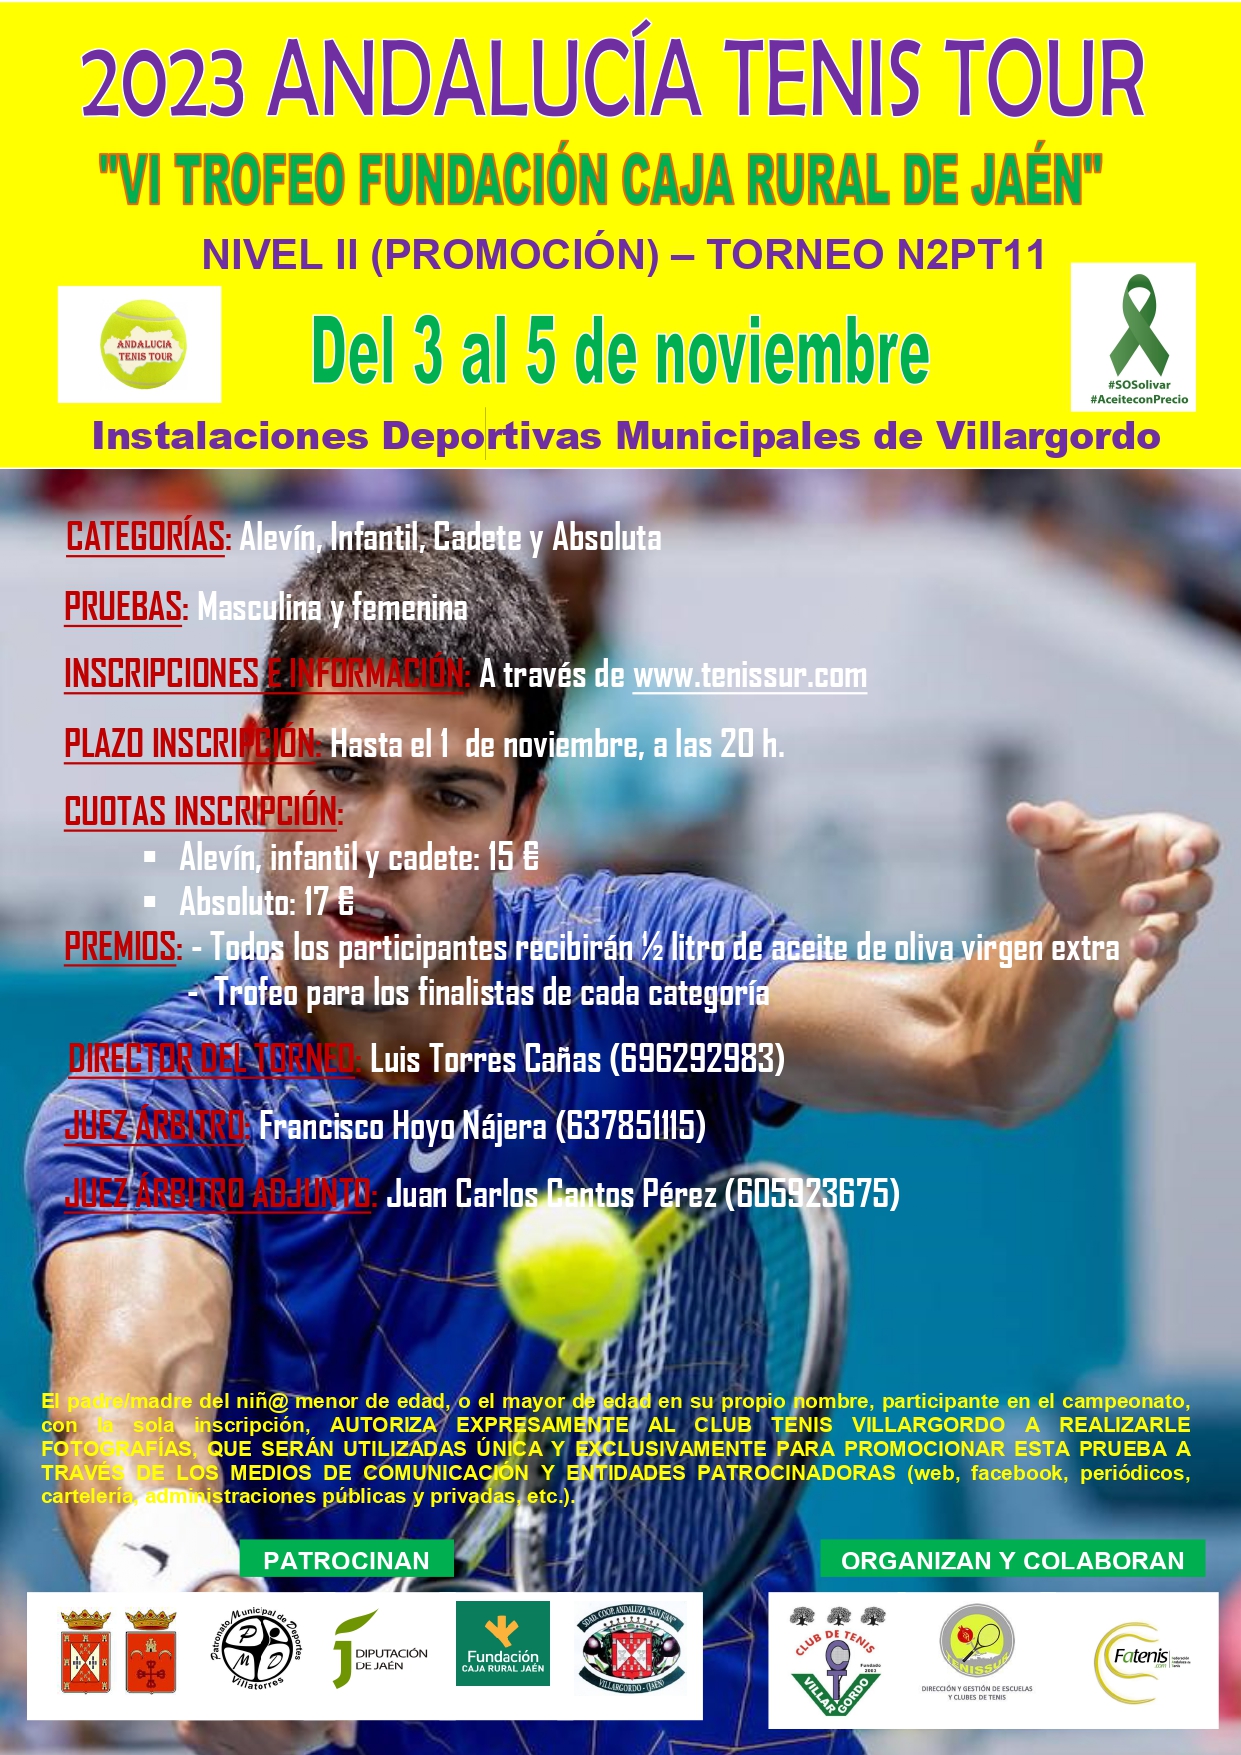 2023 Andalucía Tenis Tour VI Trofeo Fundación Caja Rural de Jaén